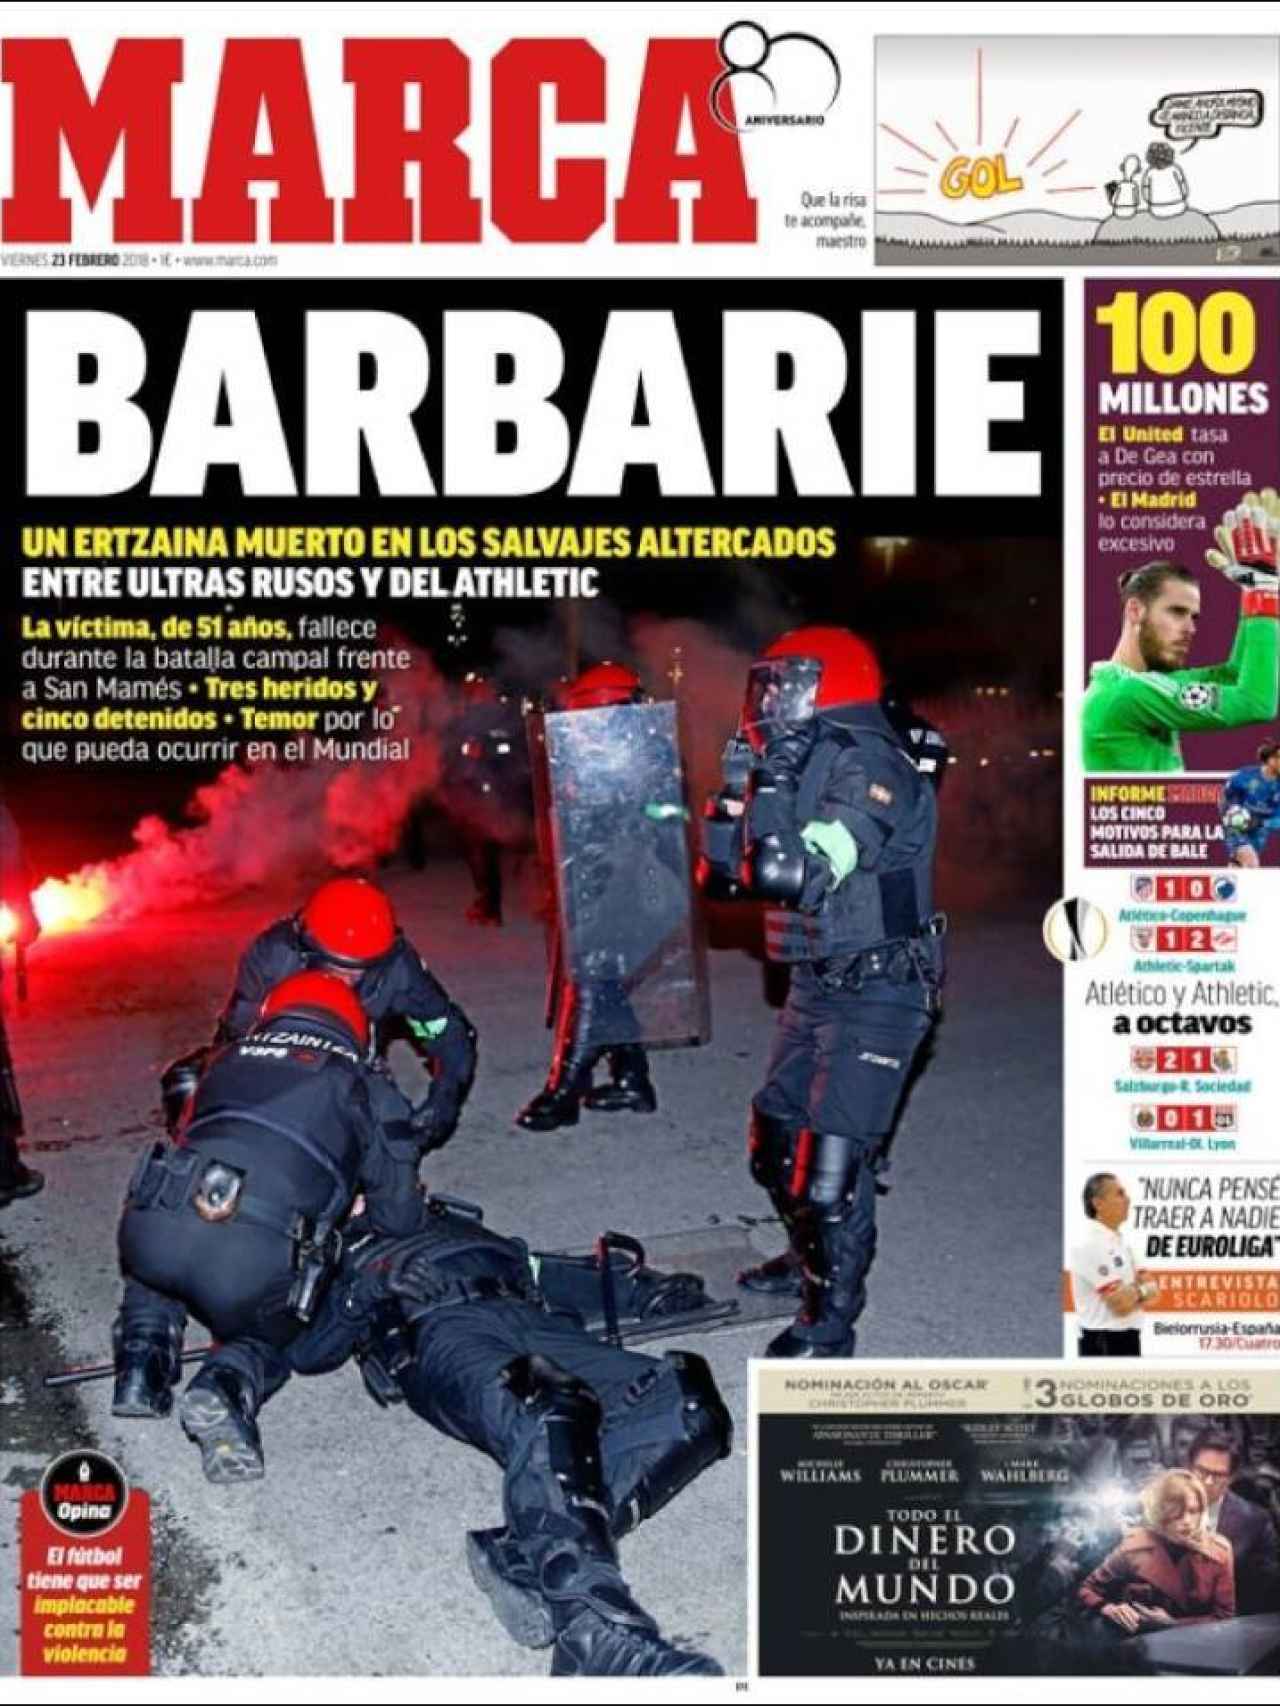 MARCA abre con los graves incidentes en Bilbao, donde un ertzaina murió tras los enfrentamientos entre ultras.